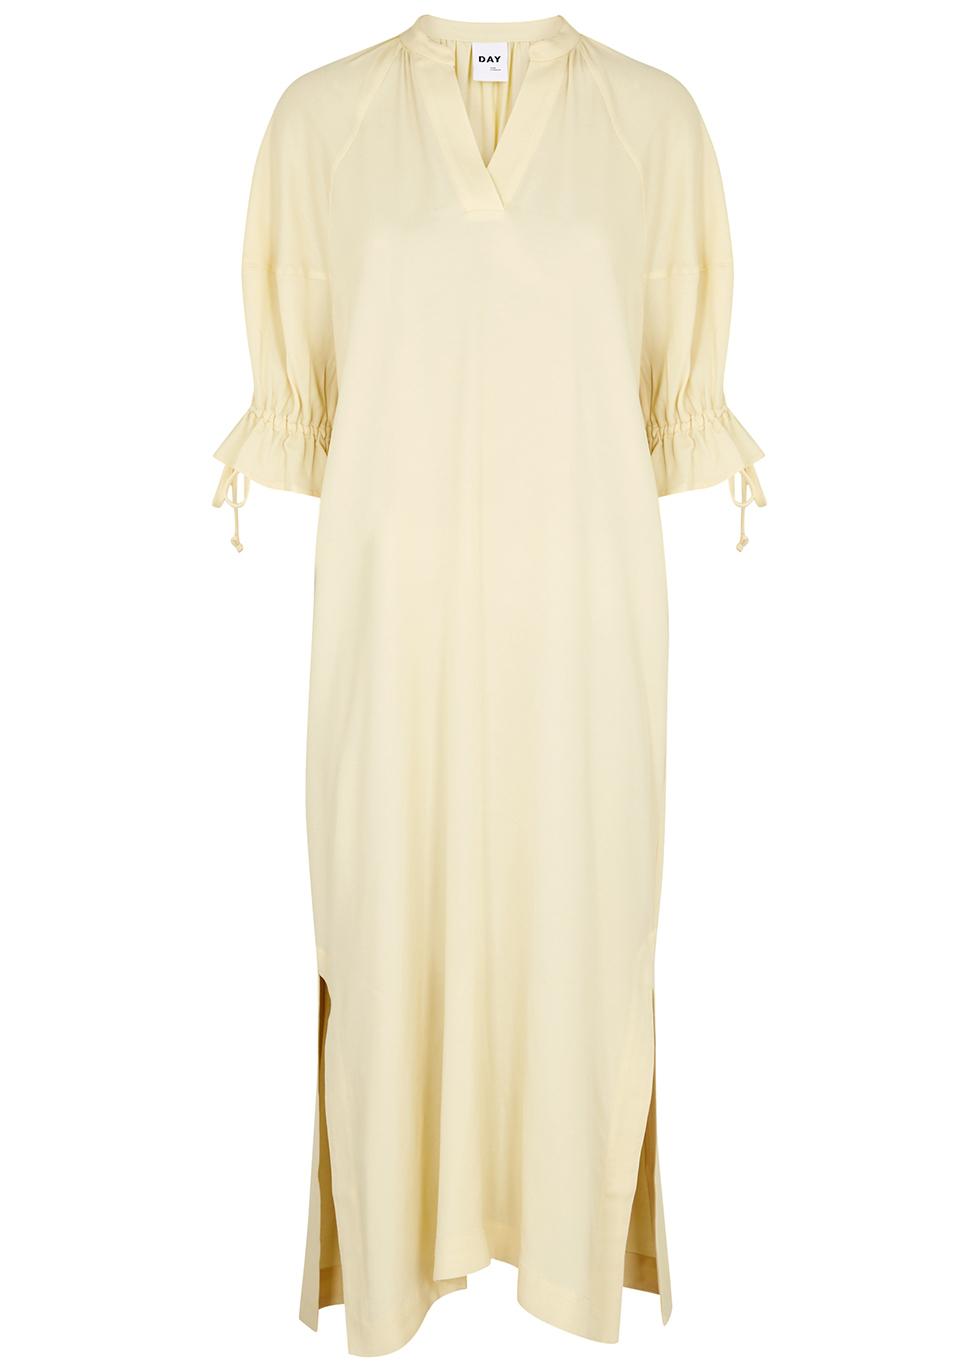 Charlotte cream midi dress by DAY BIRGER ET MIKKELSEN